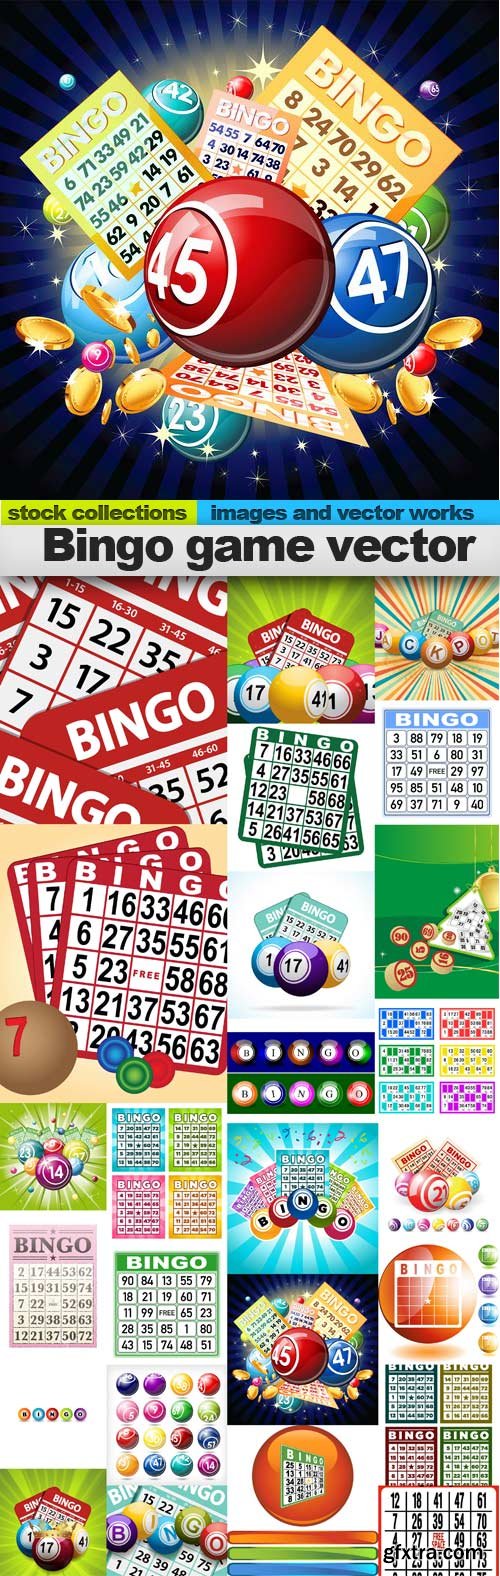 Bingo game vector,25 x EPS